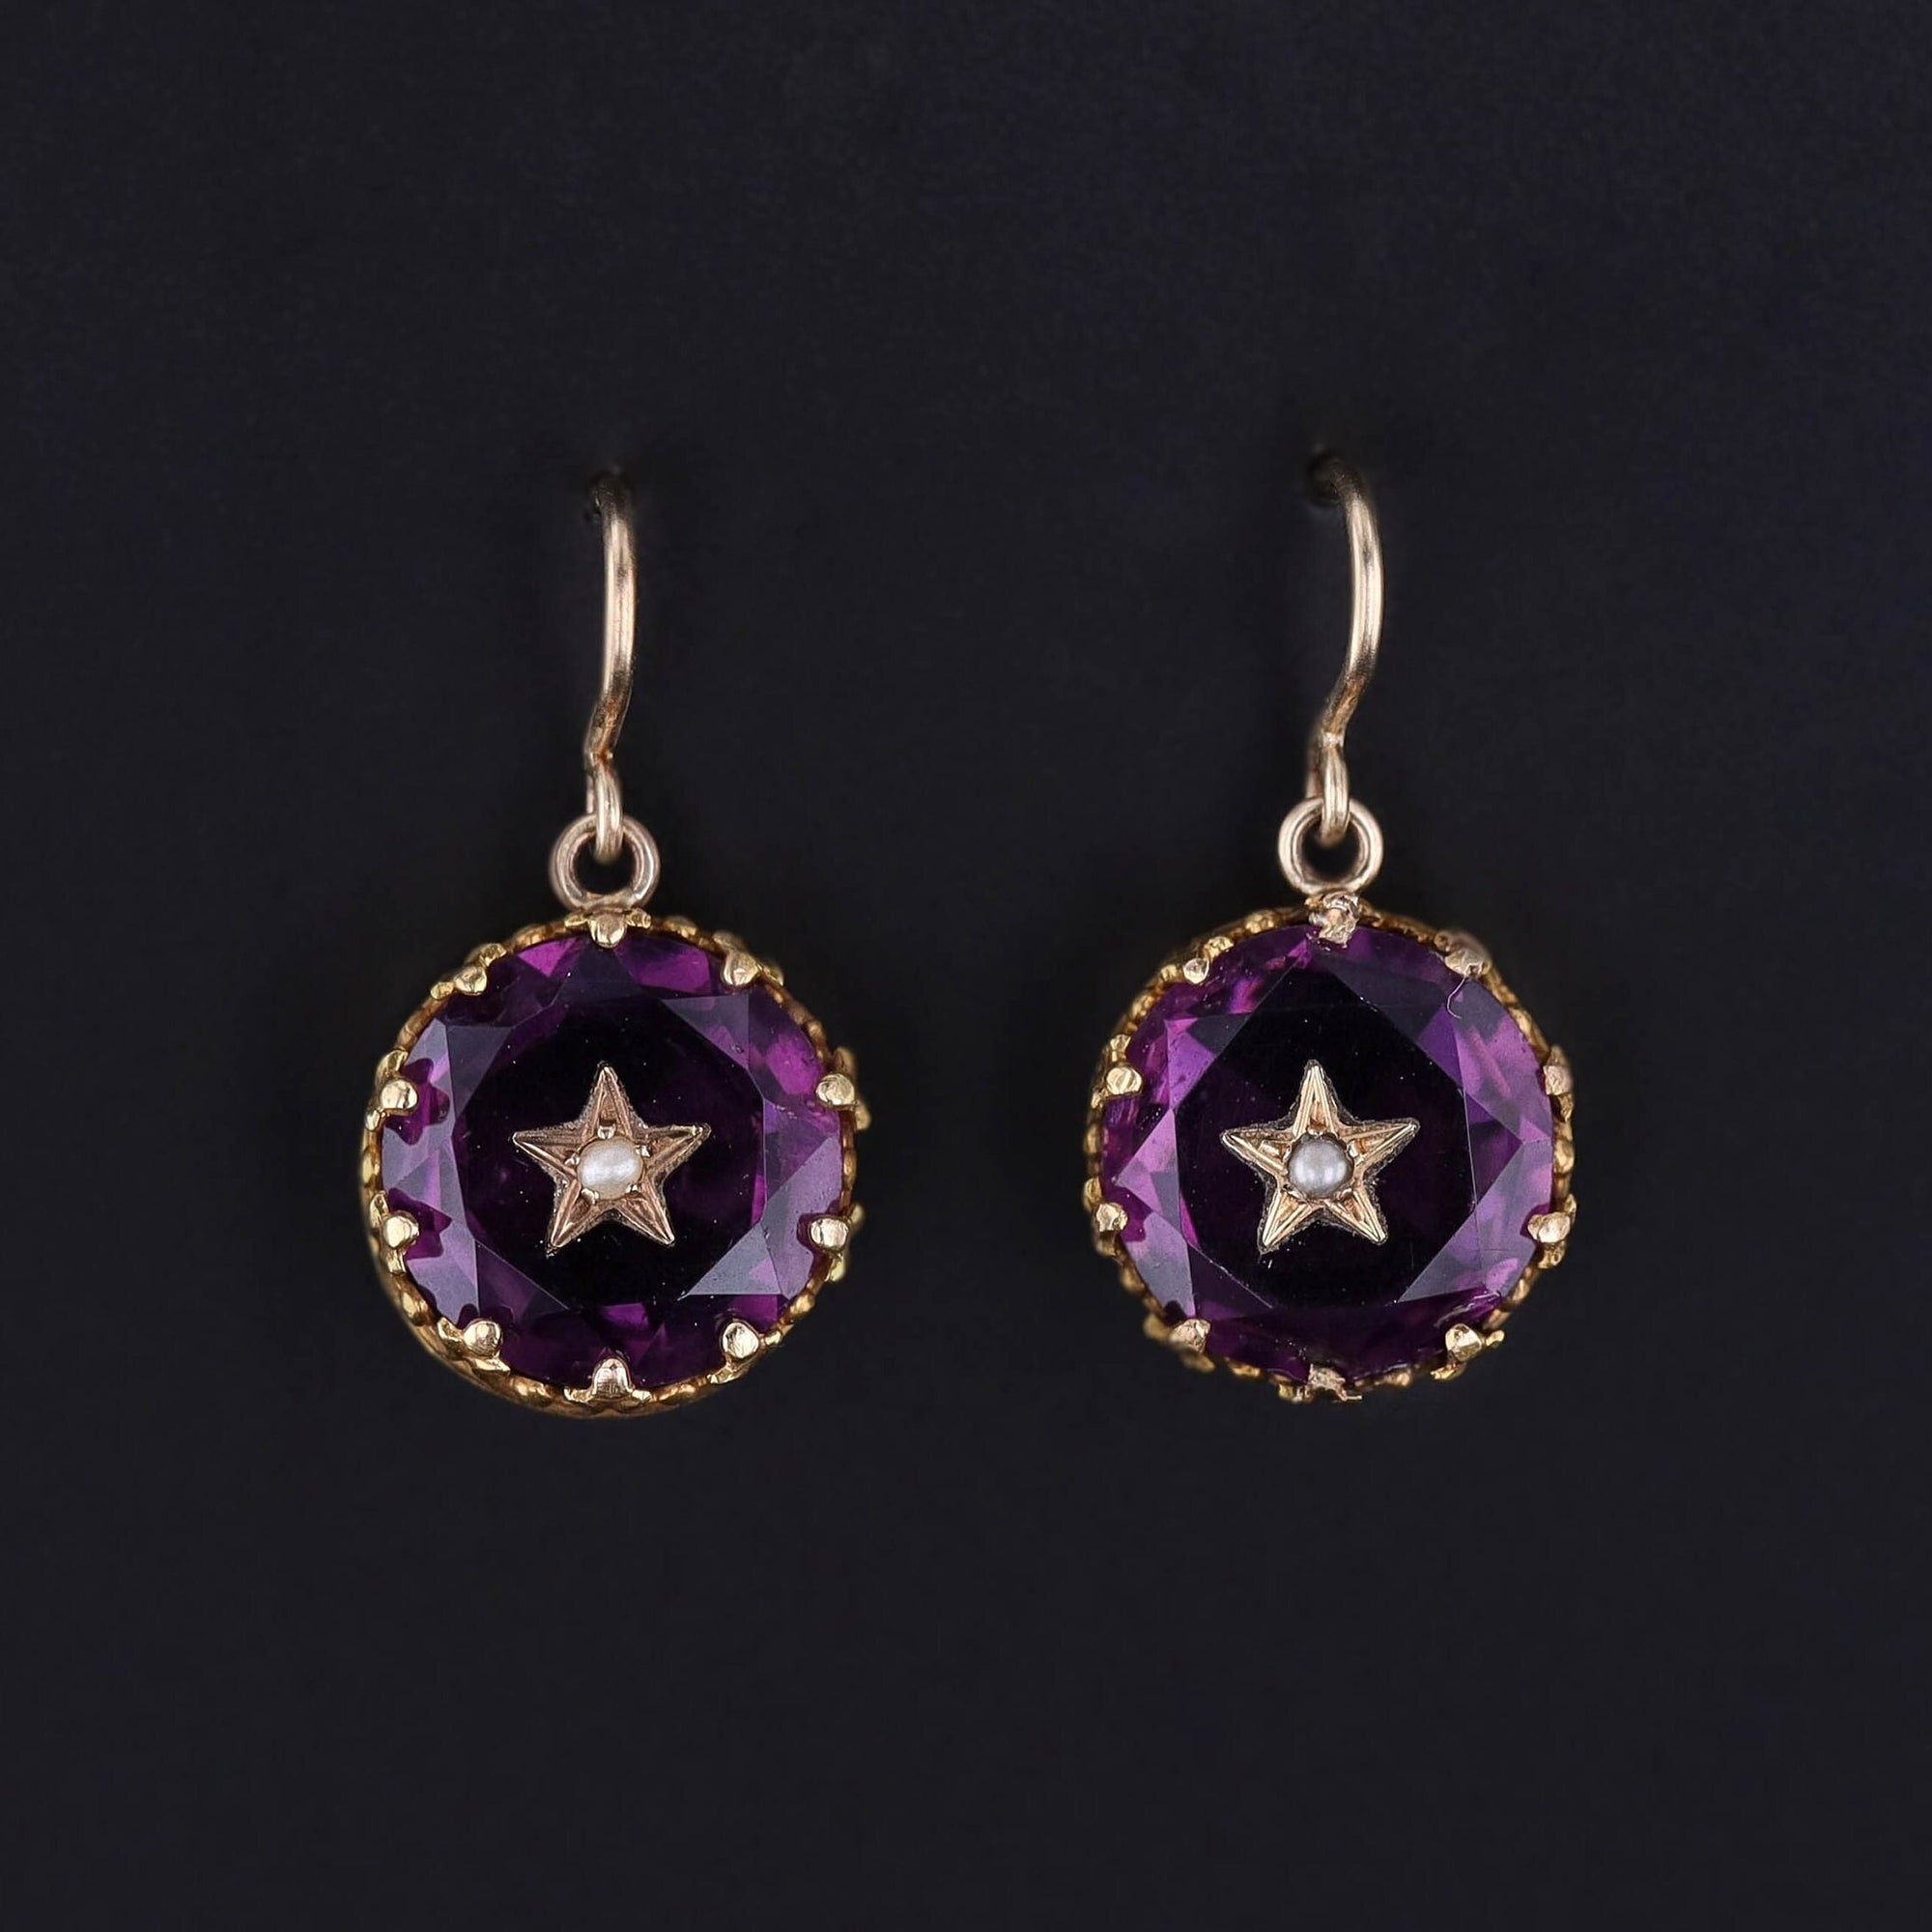 Antique Purple Glass Star Earrings of 14k Gold